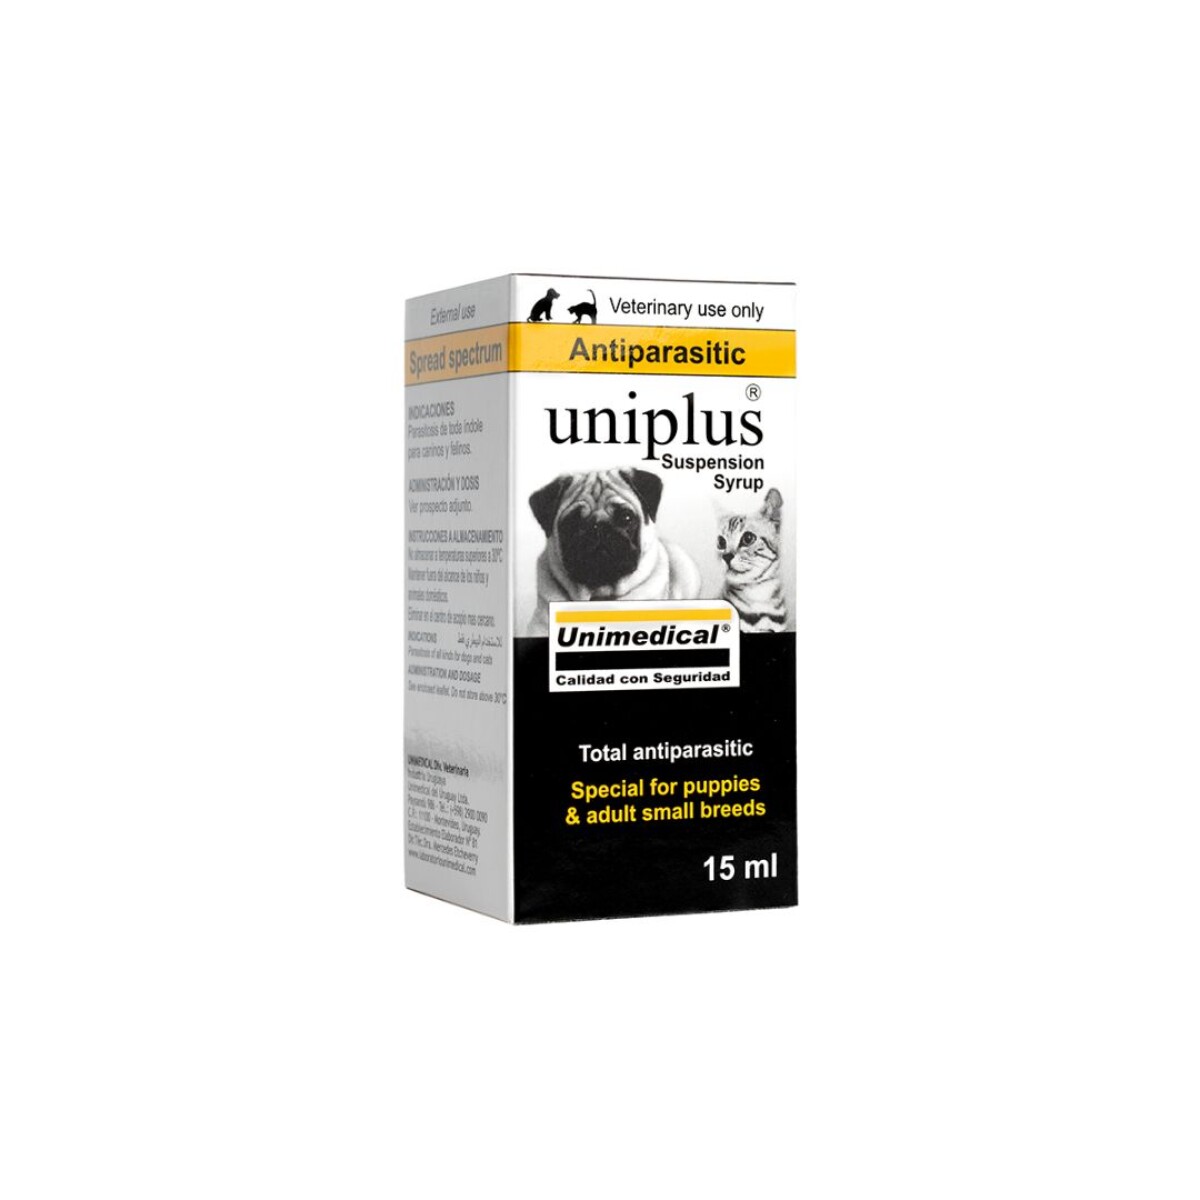 UNIPLUS SUSPENSION 15 ML - Unica 